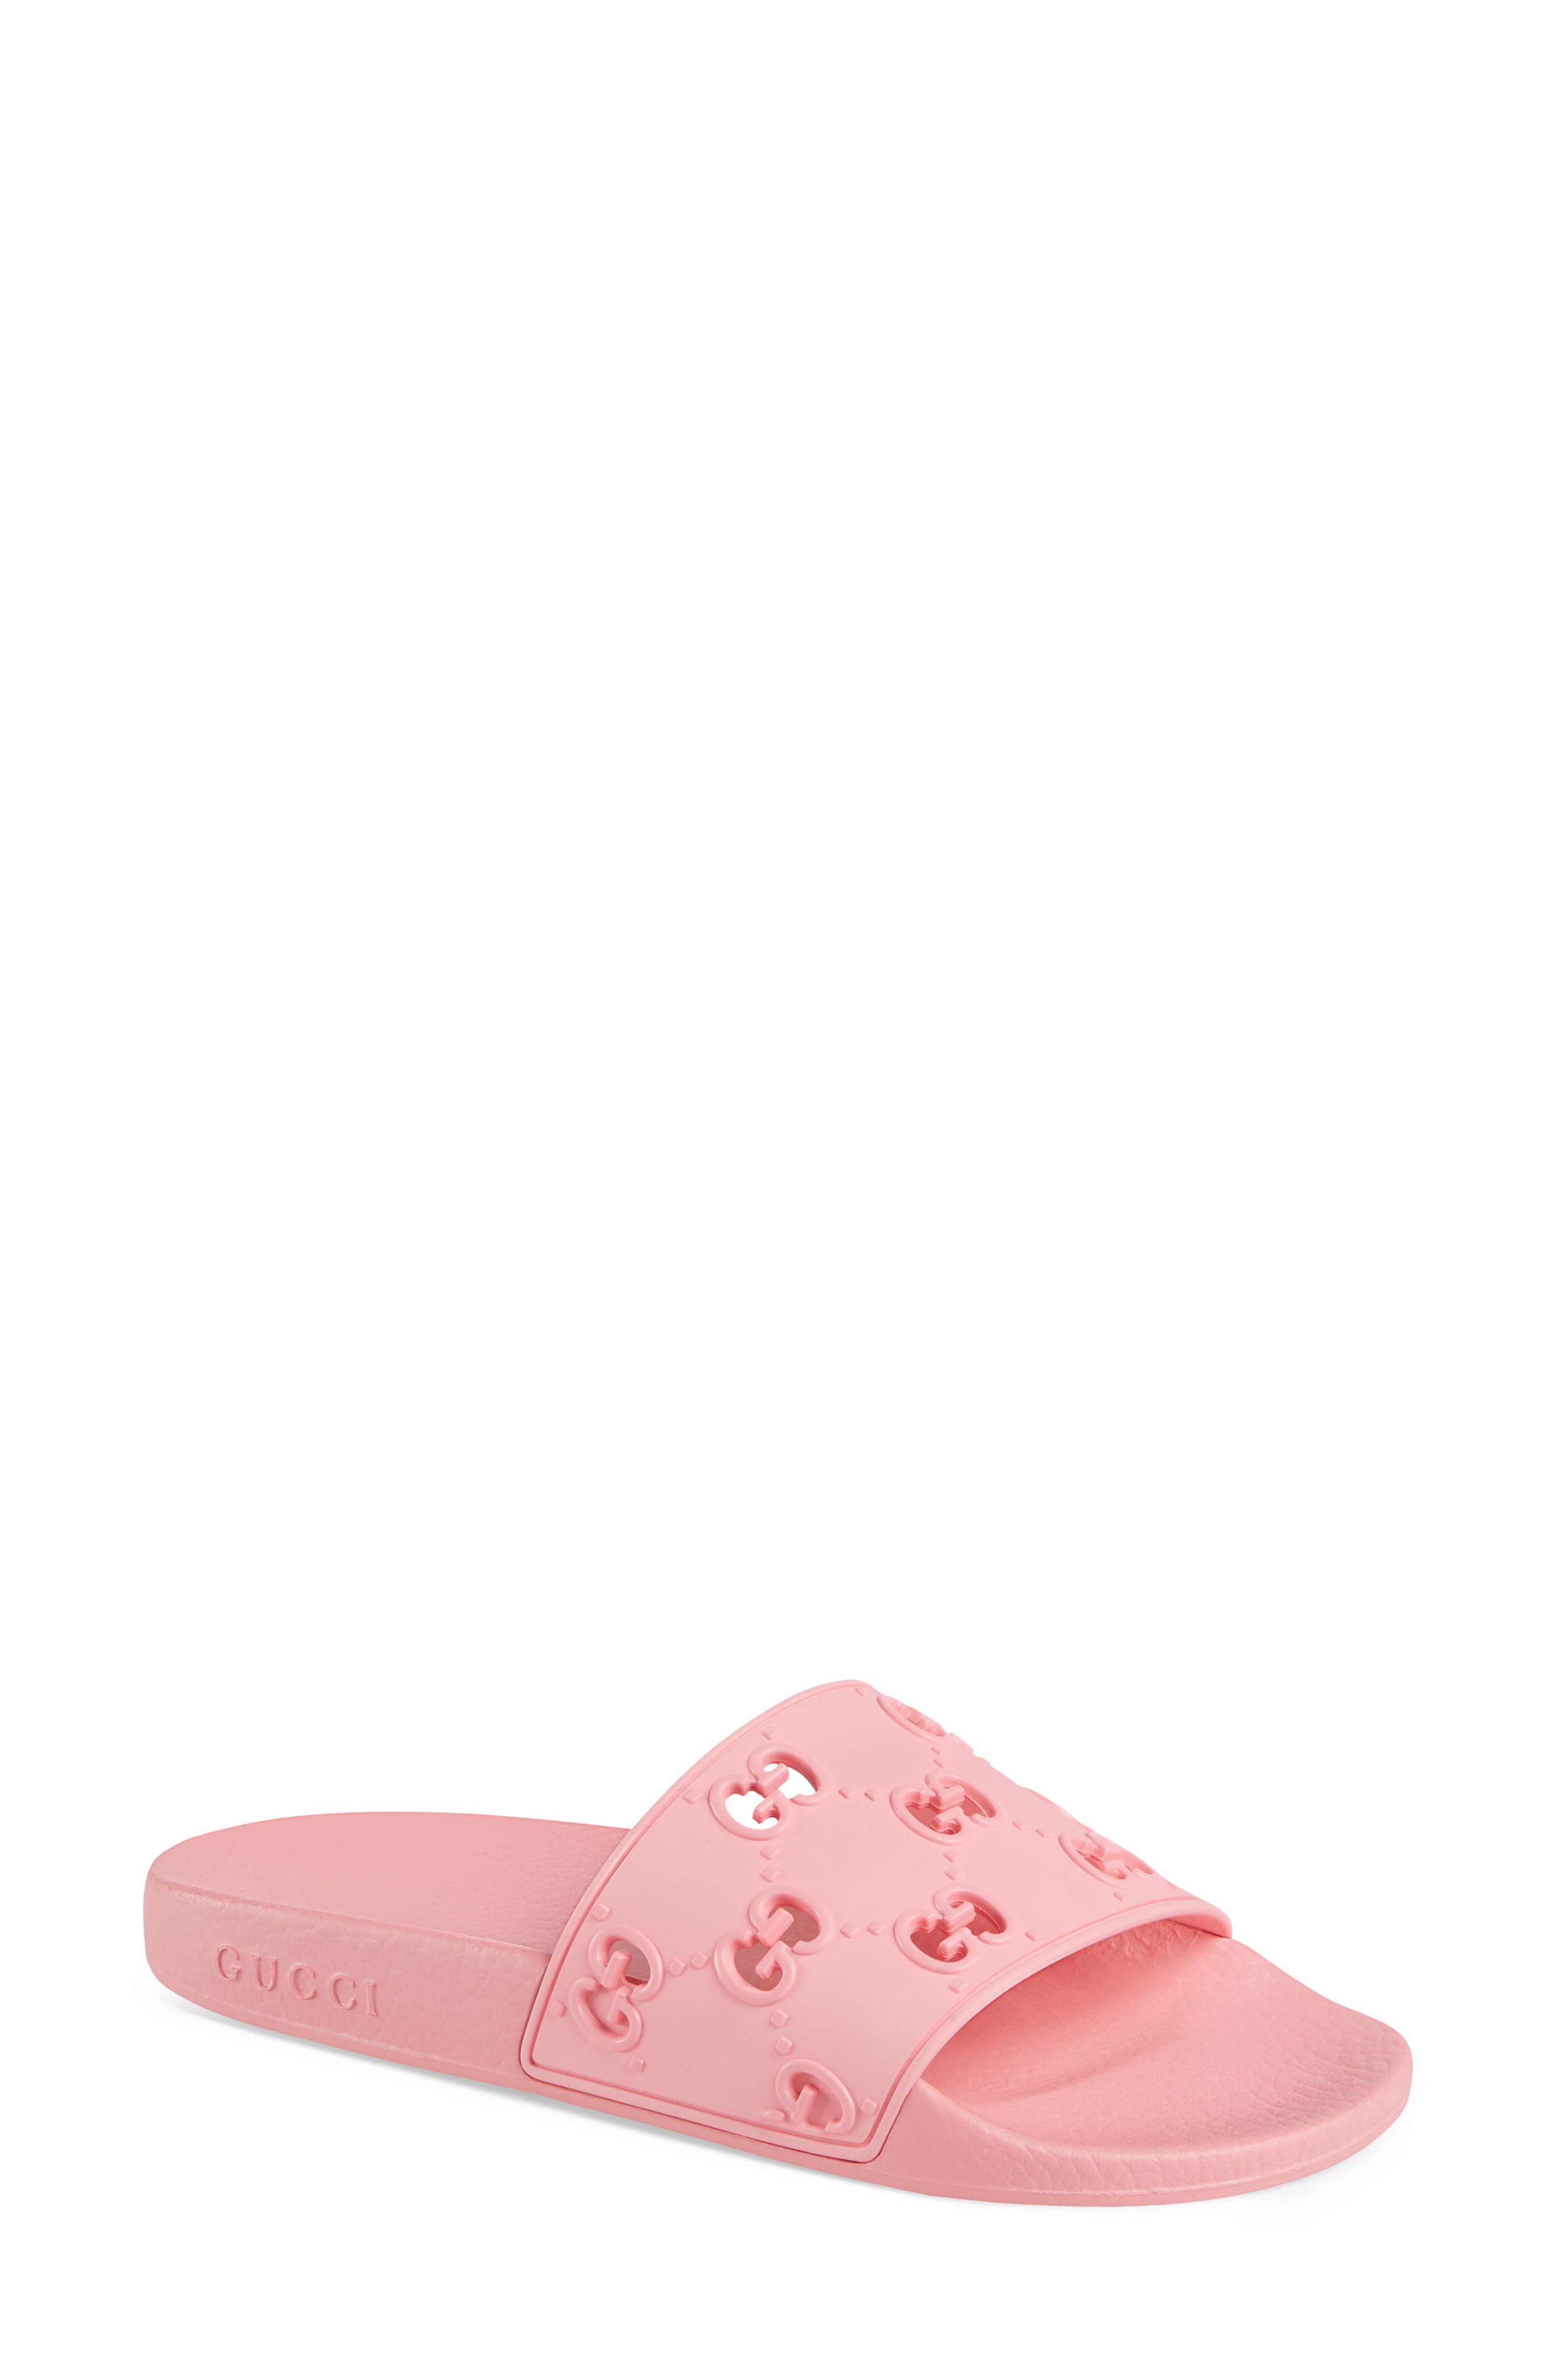 gucci rose pink slides